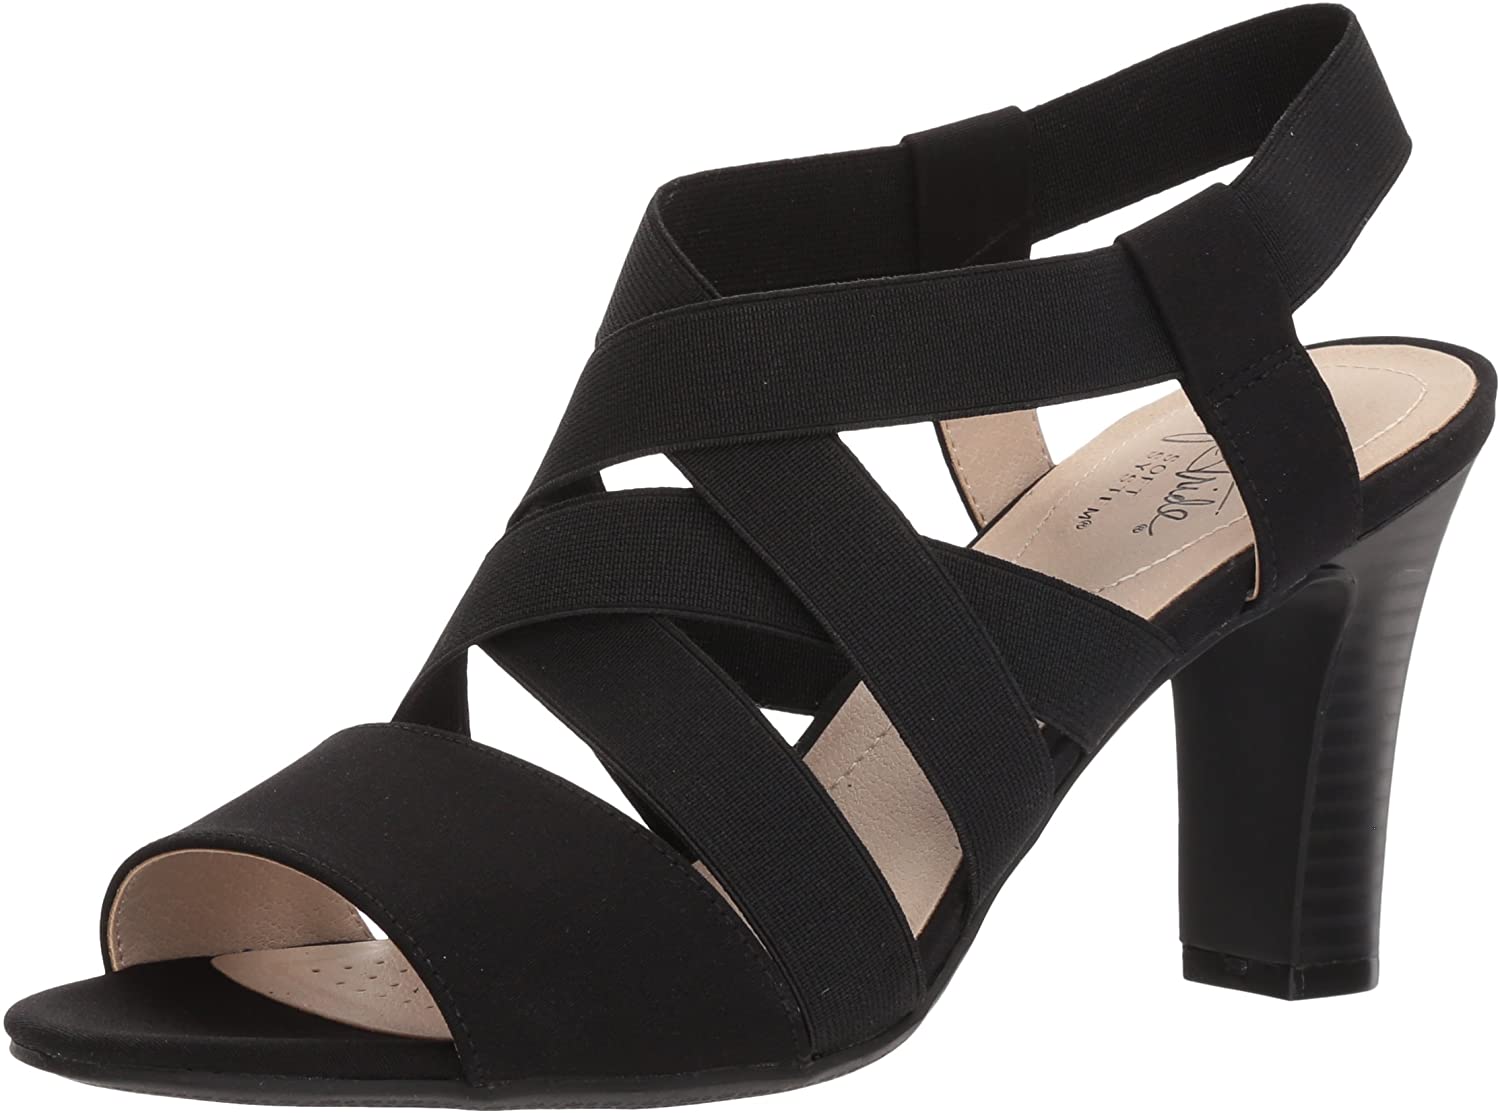 Best heels for wide feet promising utter comfort with | PINKVILLA